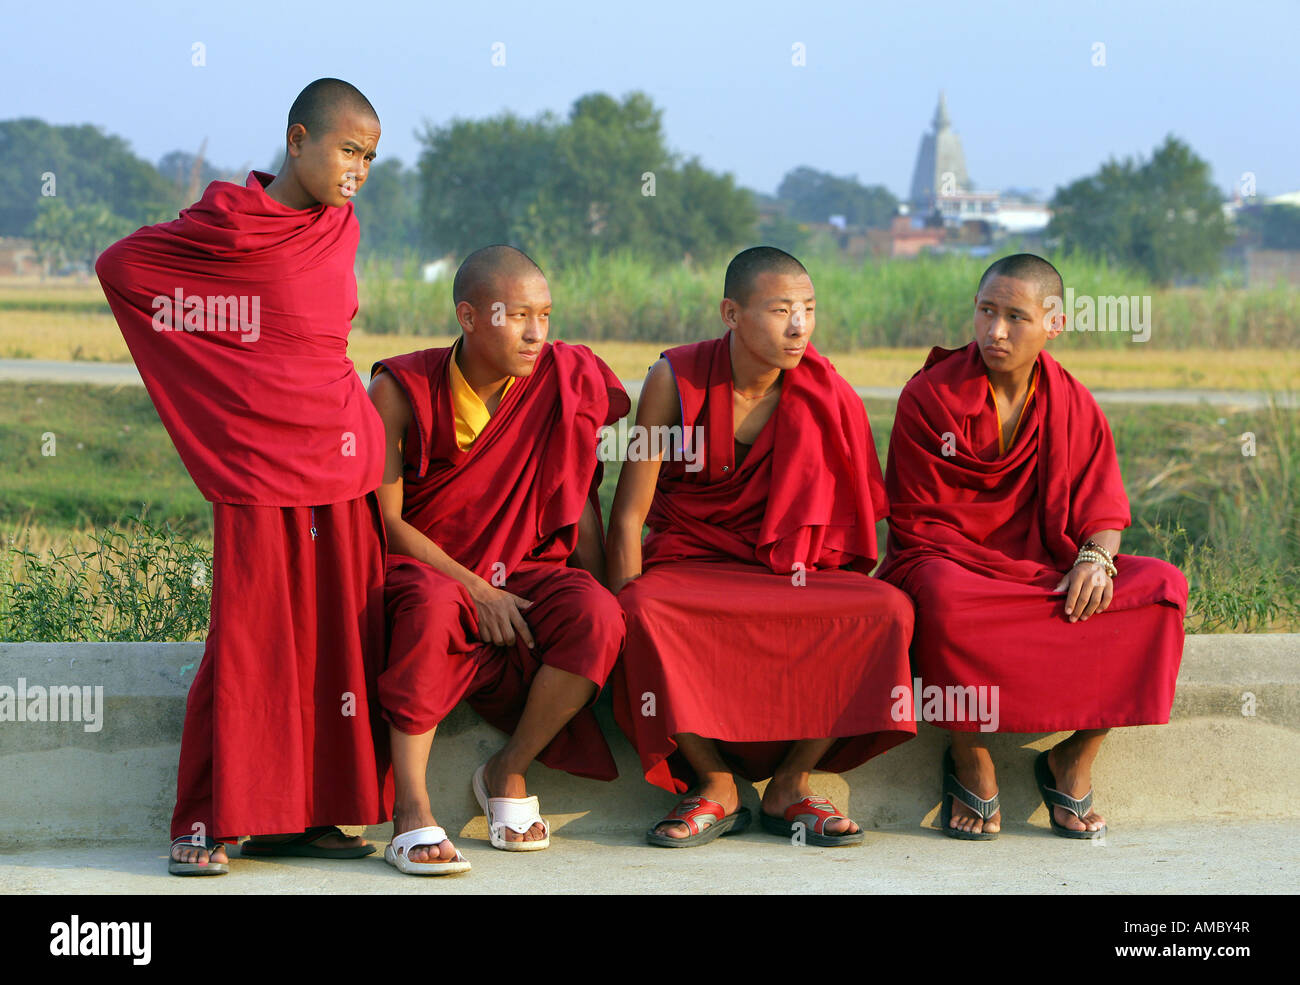 L'Inde, Bodhgaya : les jeunes moines bouddhistes, Temple de la Mahabodhi Bodhgaya, Inde, : les jeunes moines bouddhistes, Temple de la Mahabodhi, le lieu de t Banque D'Images